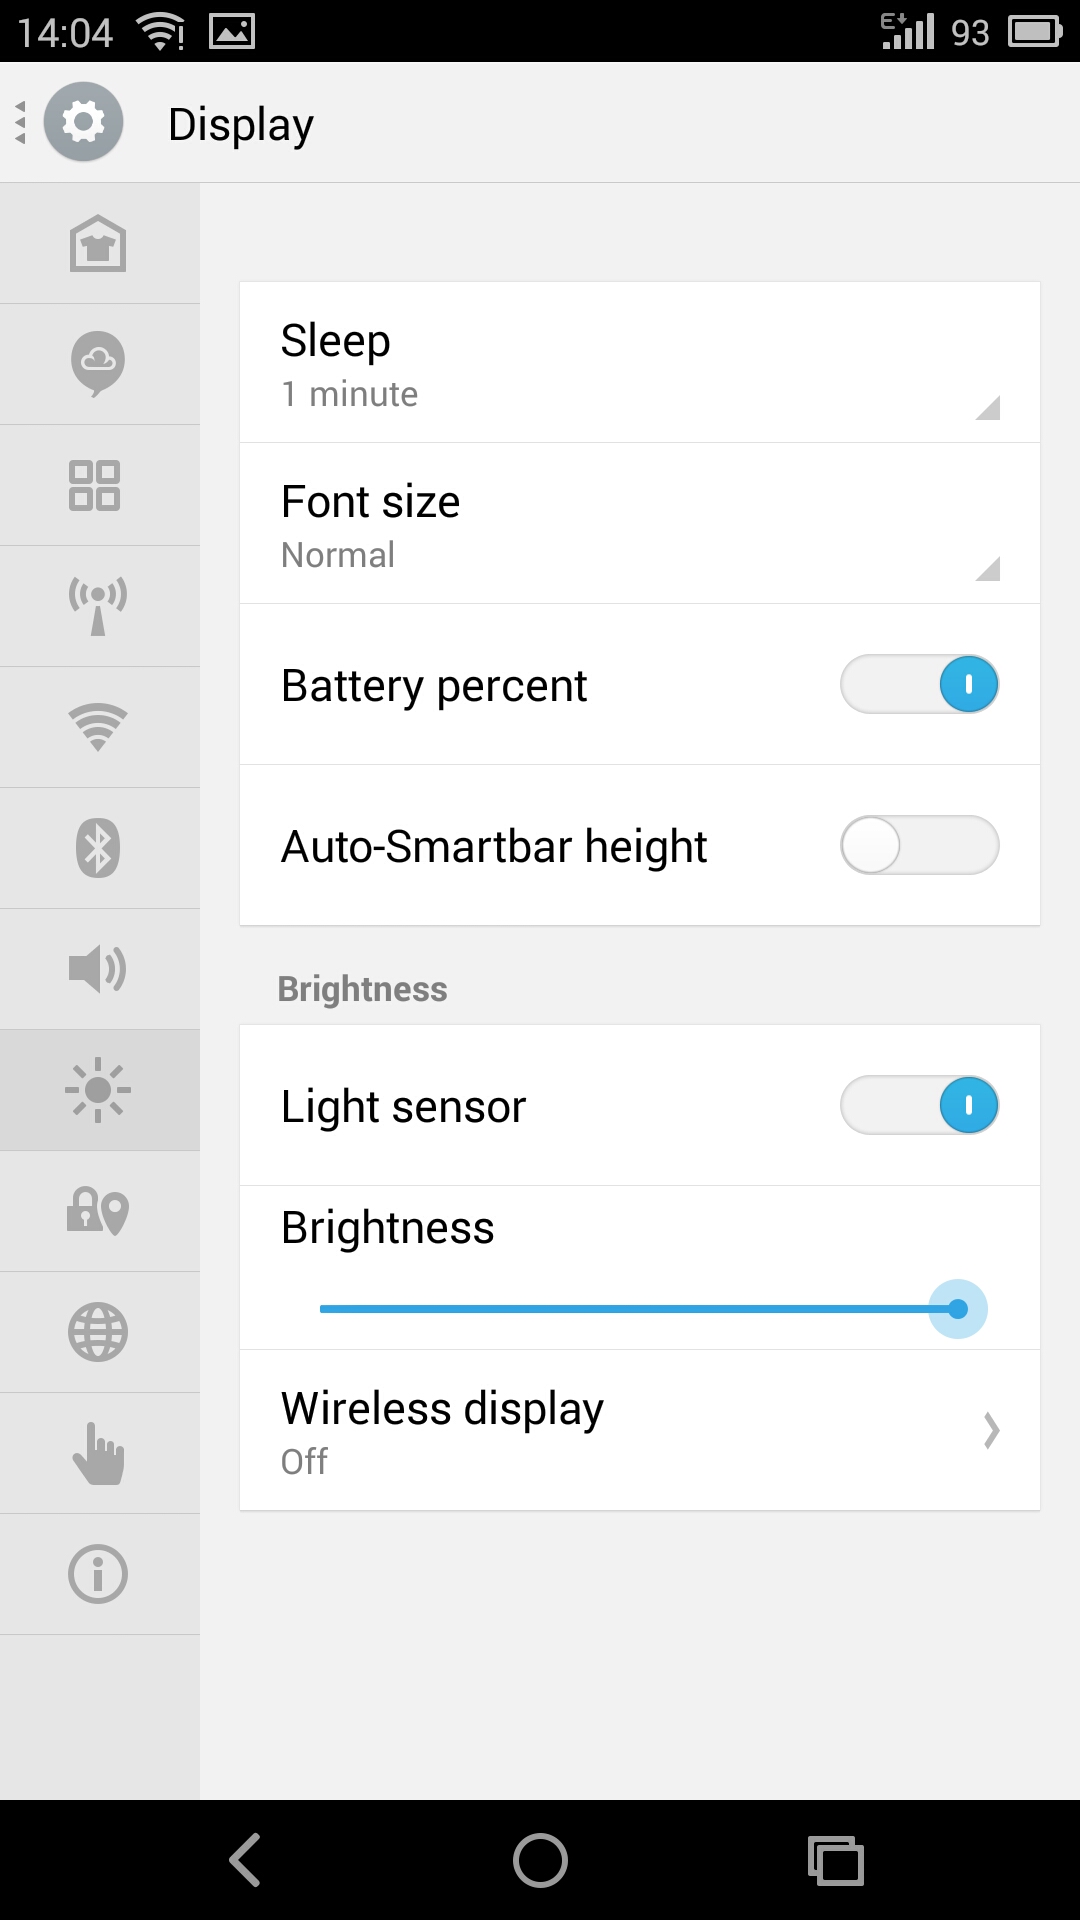 Flyme OS on Nexus 5 settings app